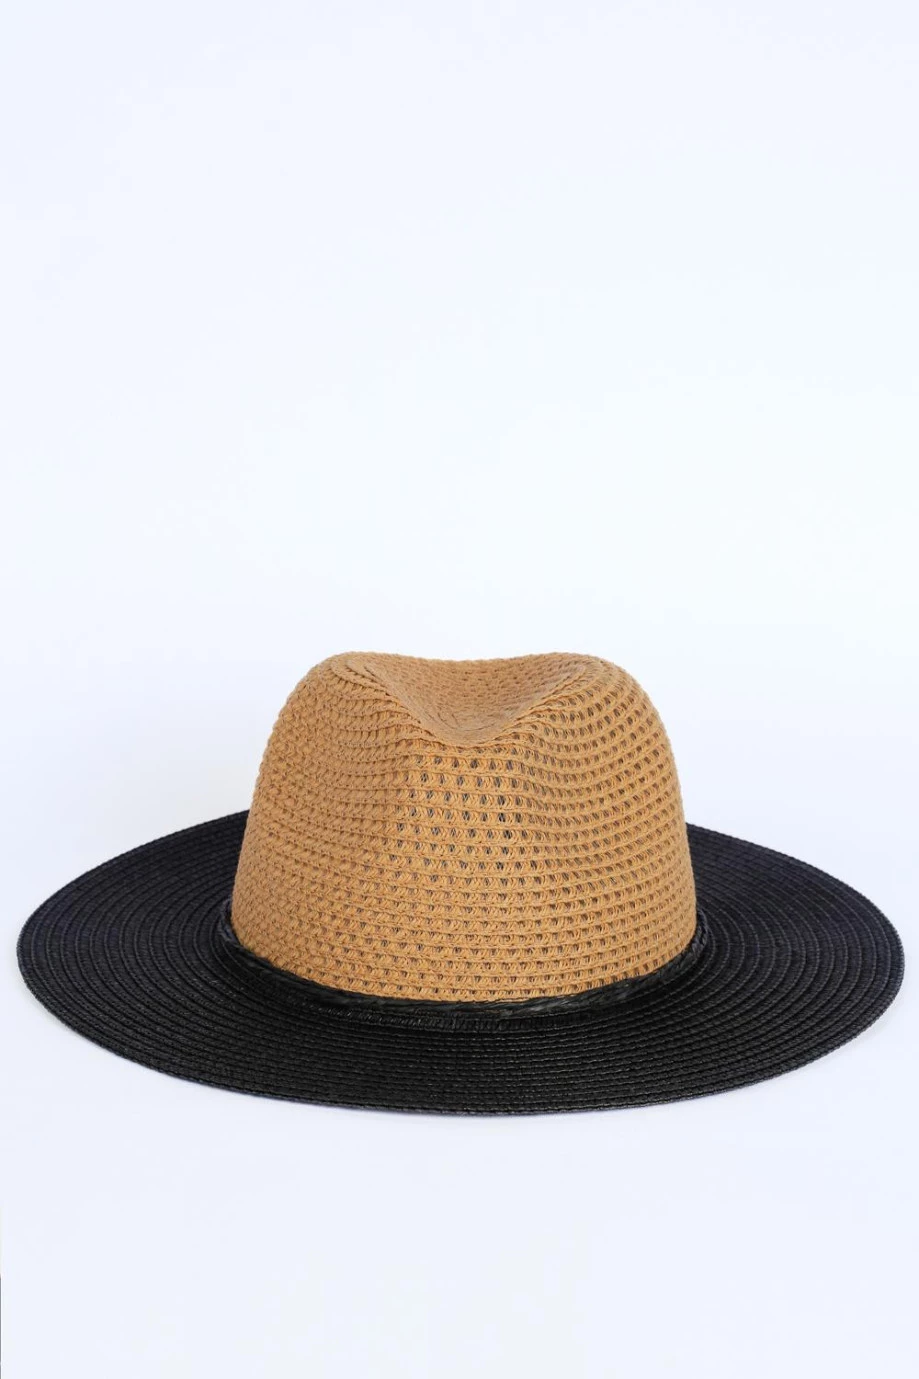 Sombrero kaky claro con ala ancha plana negra en contraste